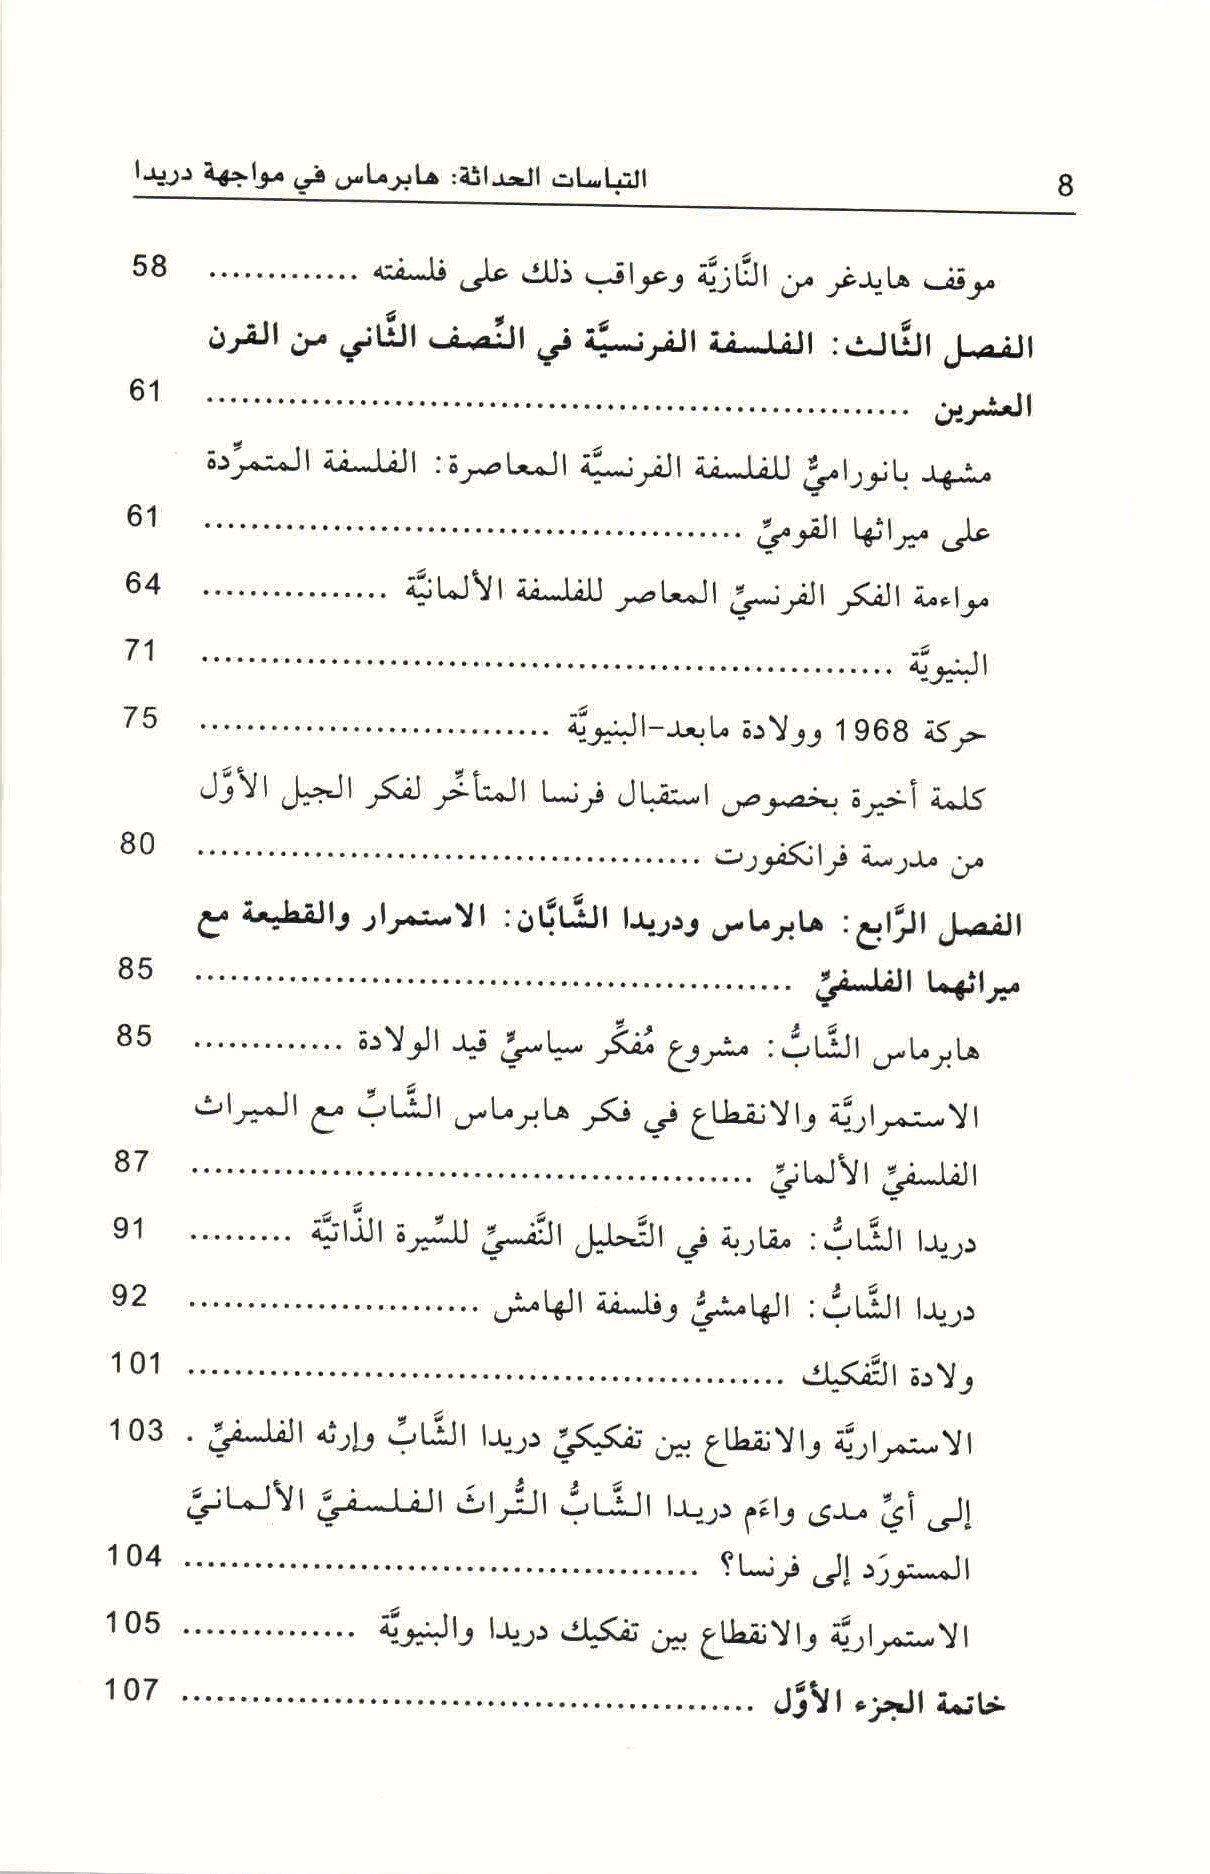 ص. 8 قائمة محتويات كتاب التباسات الحداثة.